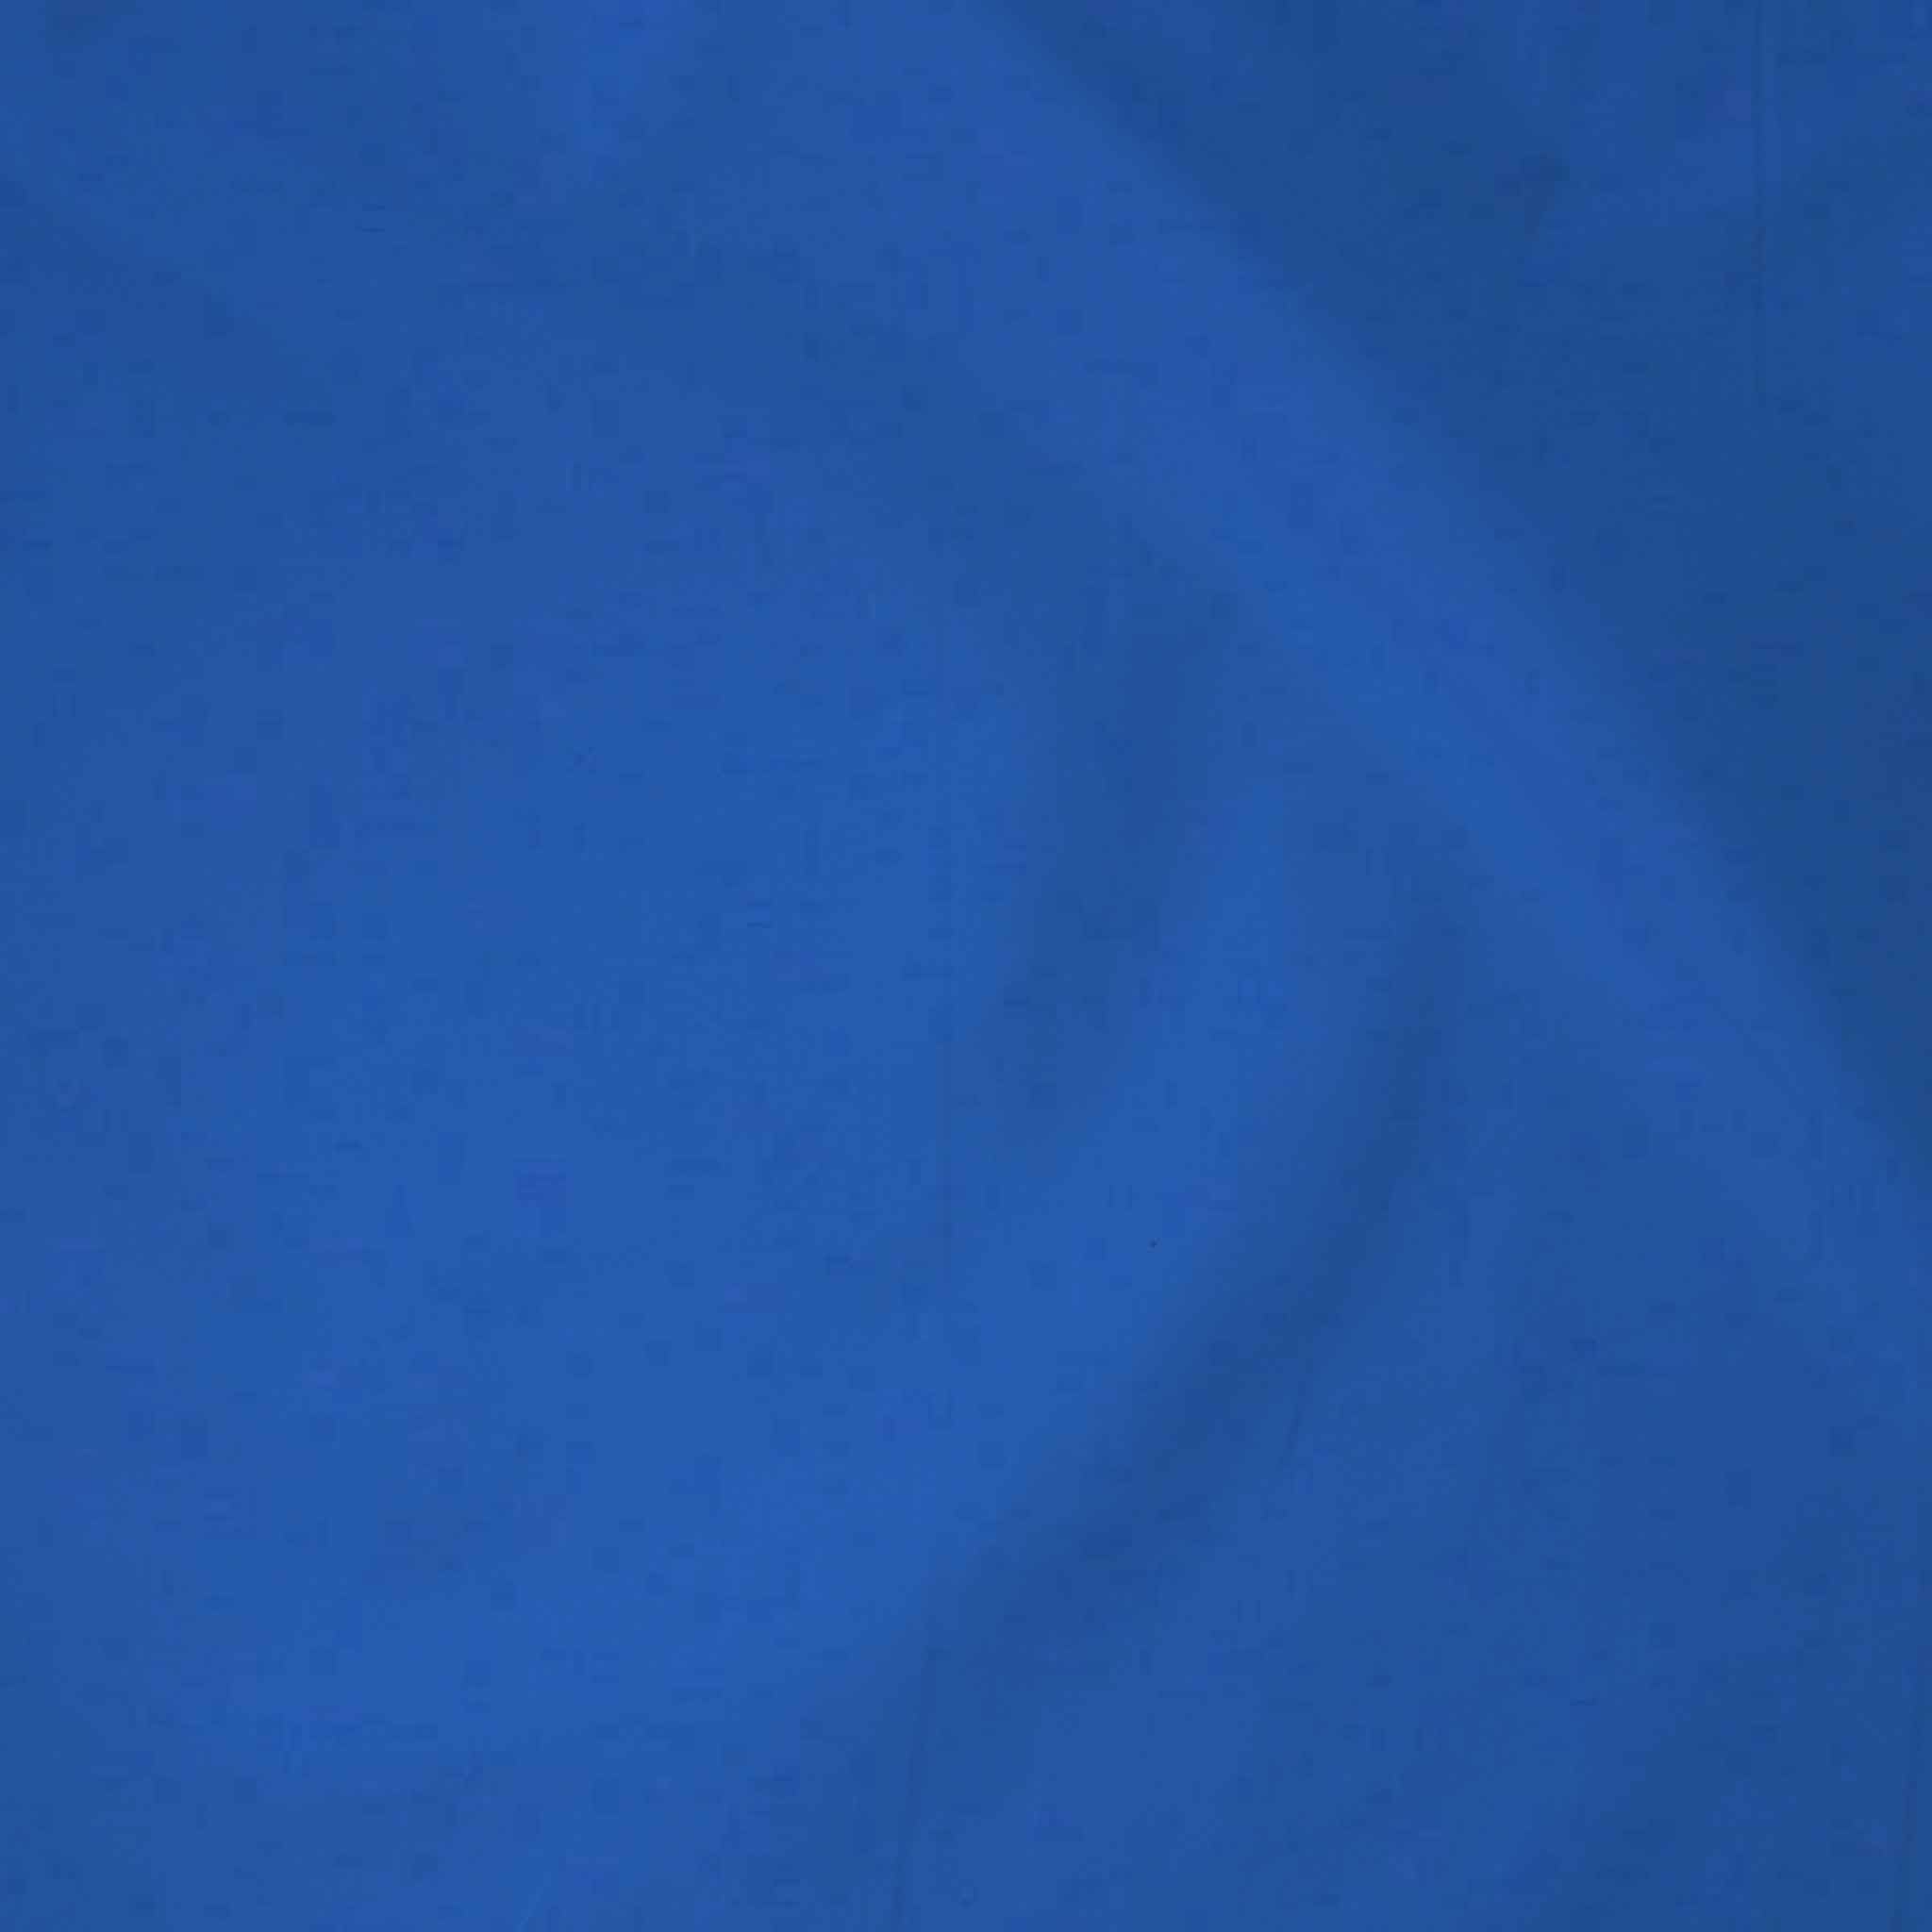 Royal Blue Cotton Fabric, Plain Blue Pure Cotton Fabric